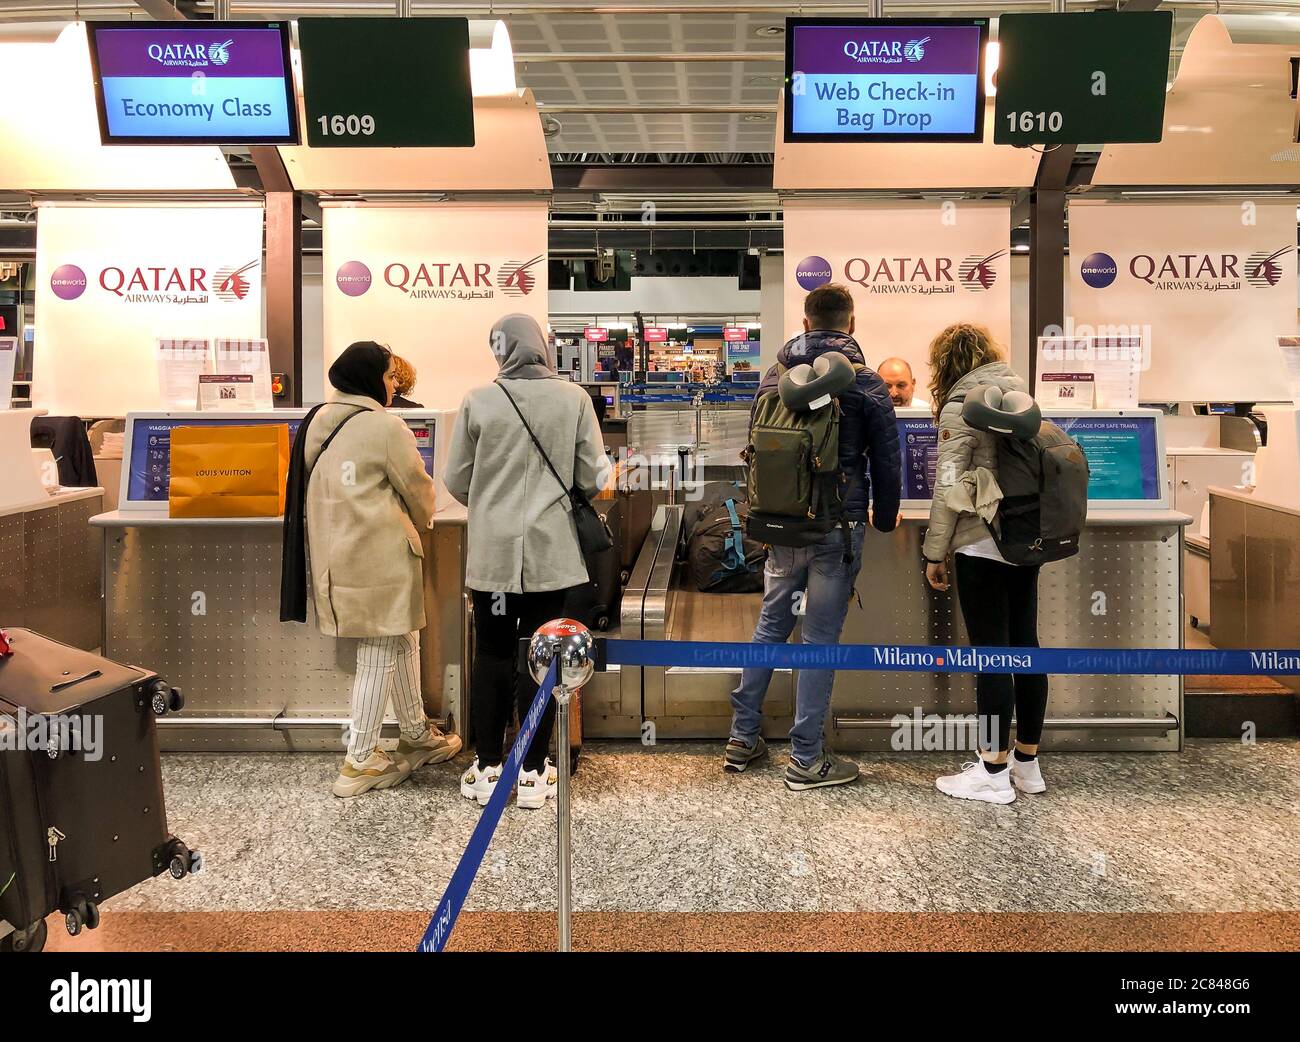 Ferno, Mailand-Malpensa, Italien - 8. Februar 2020: Chek-in-Schalter der Qatar Airways Gesellschaft für Doha Flug im Mailand-Malpensa Flughafen Terminal 1. Stockfoto